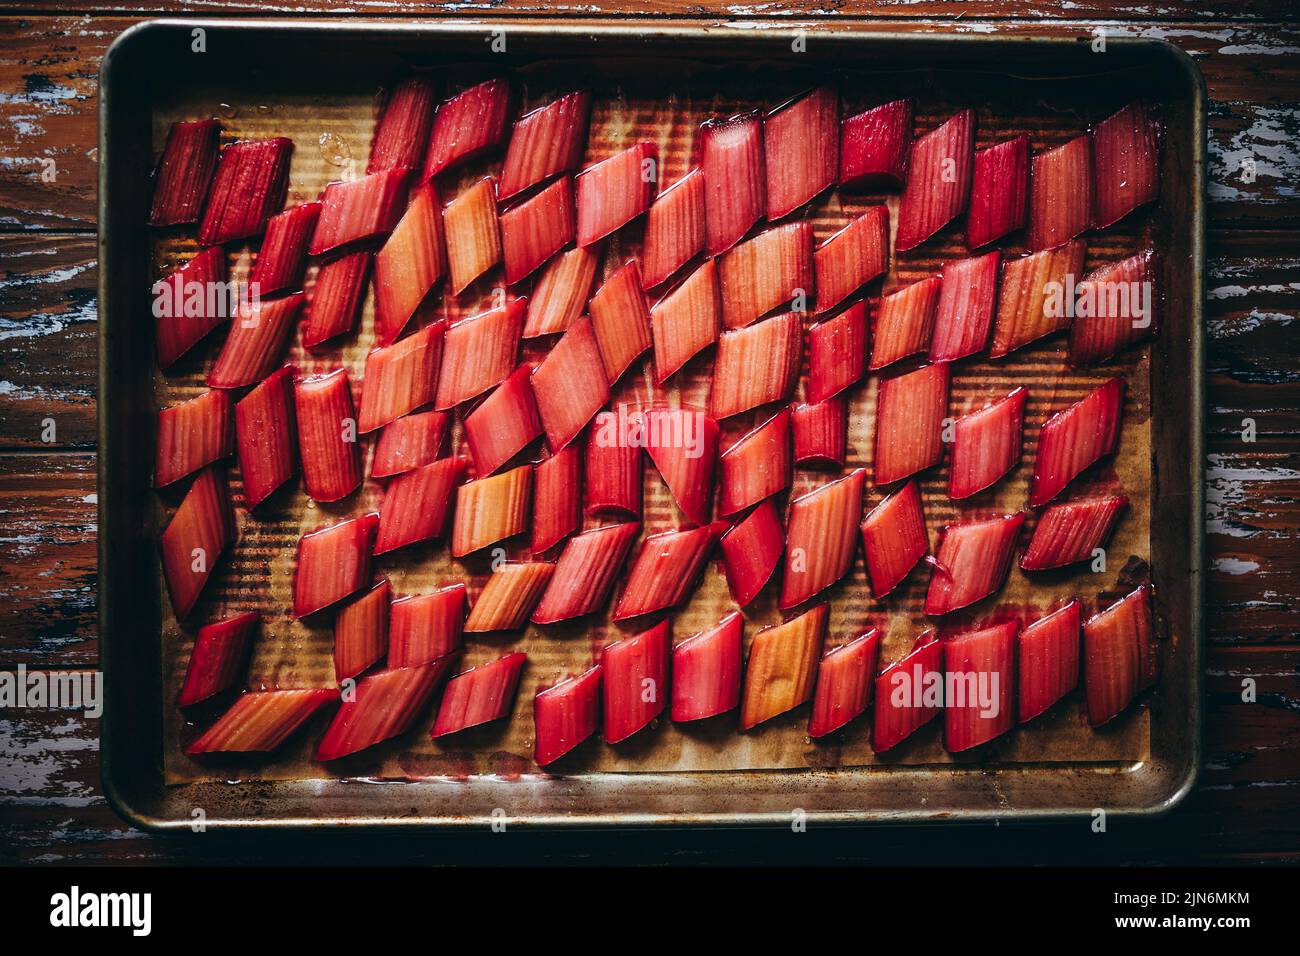 Rôti de rhubarbe sur une plaque de cuisson Banque D'Images